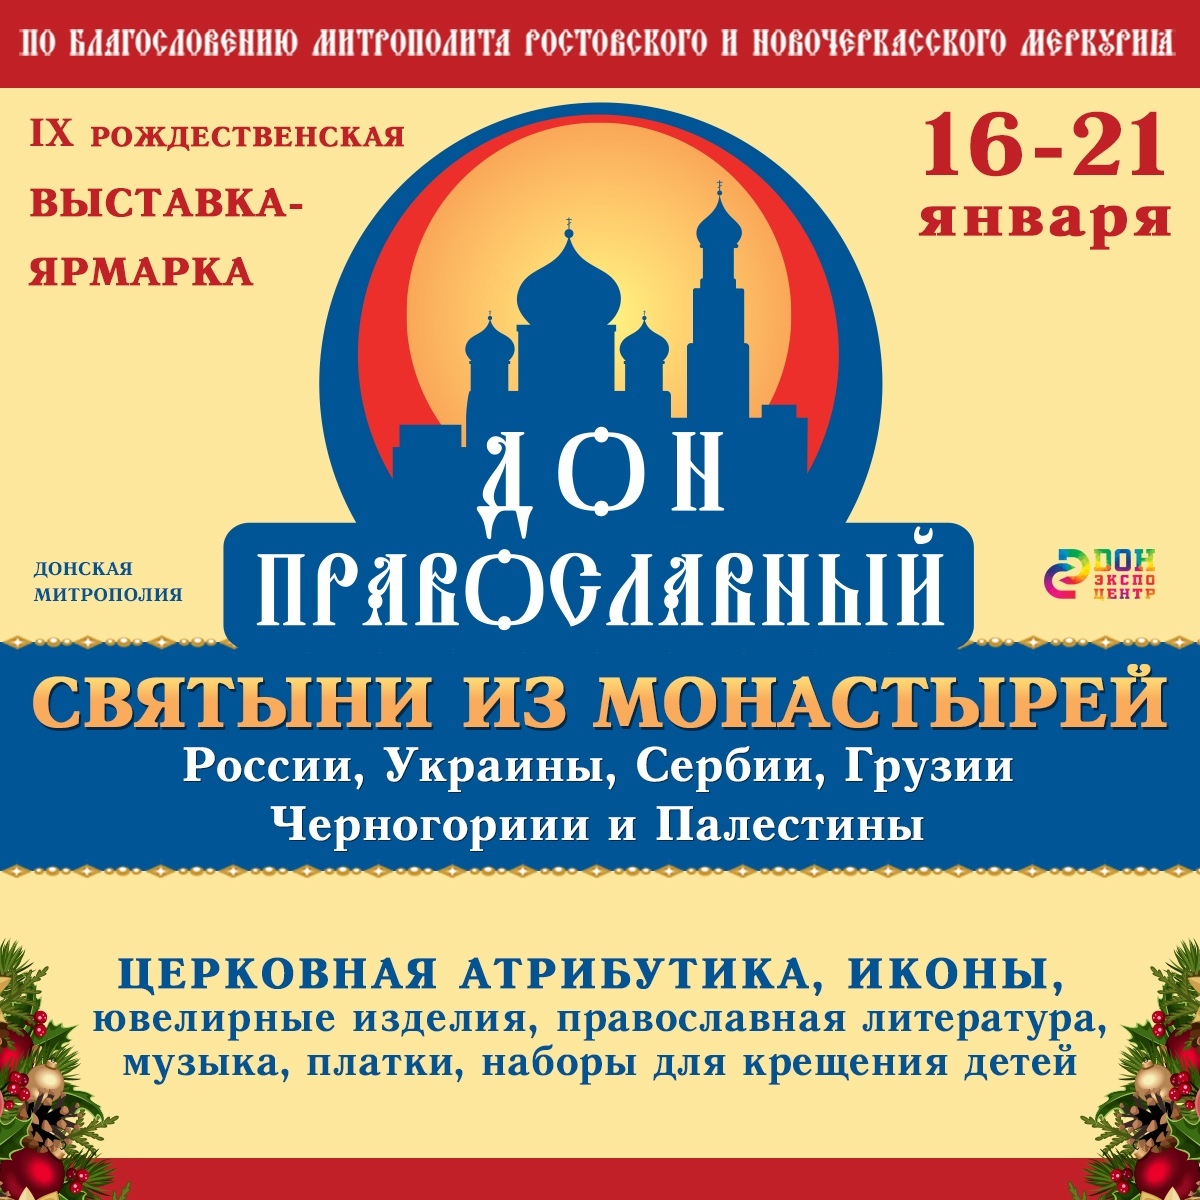 Выставка «Дон православный»